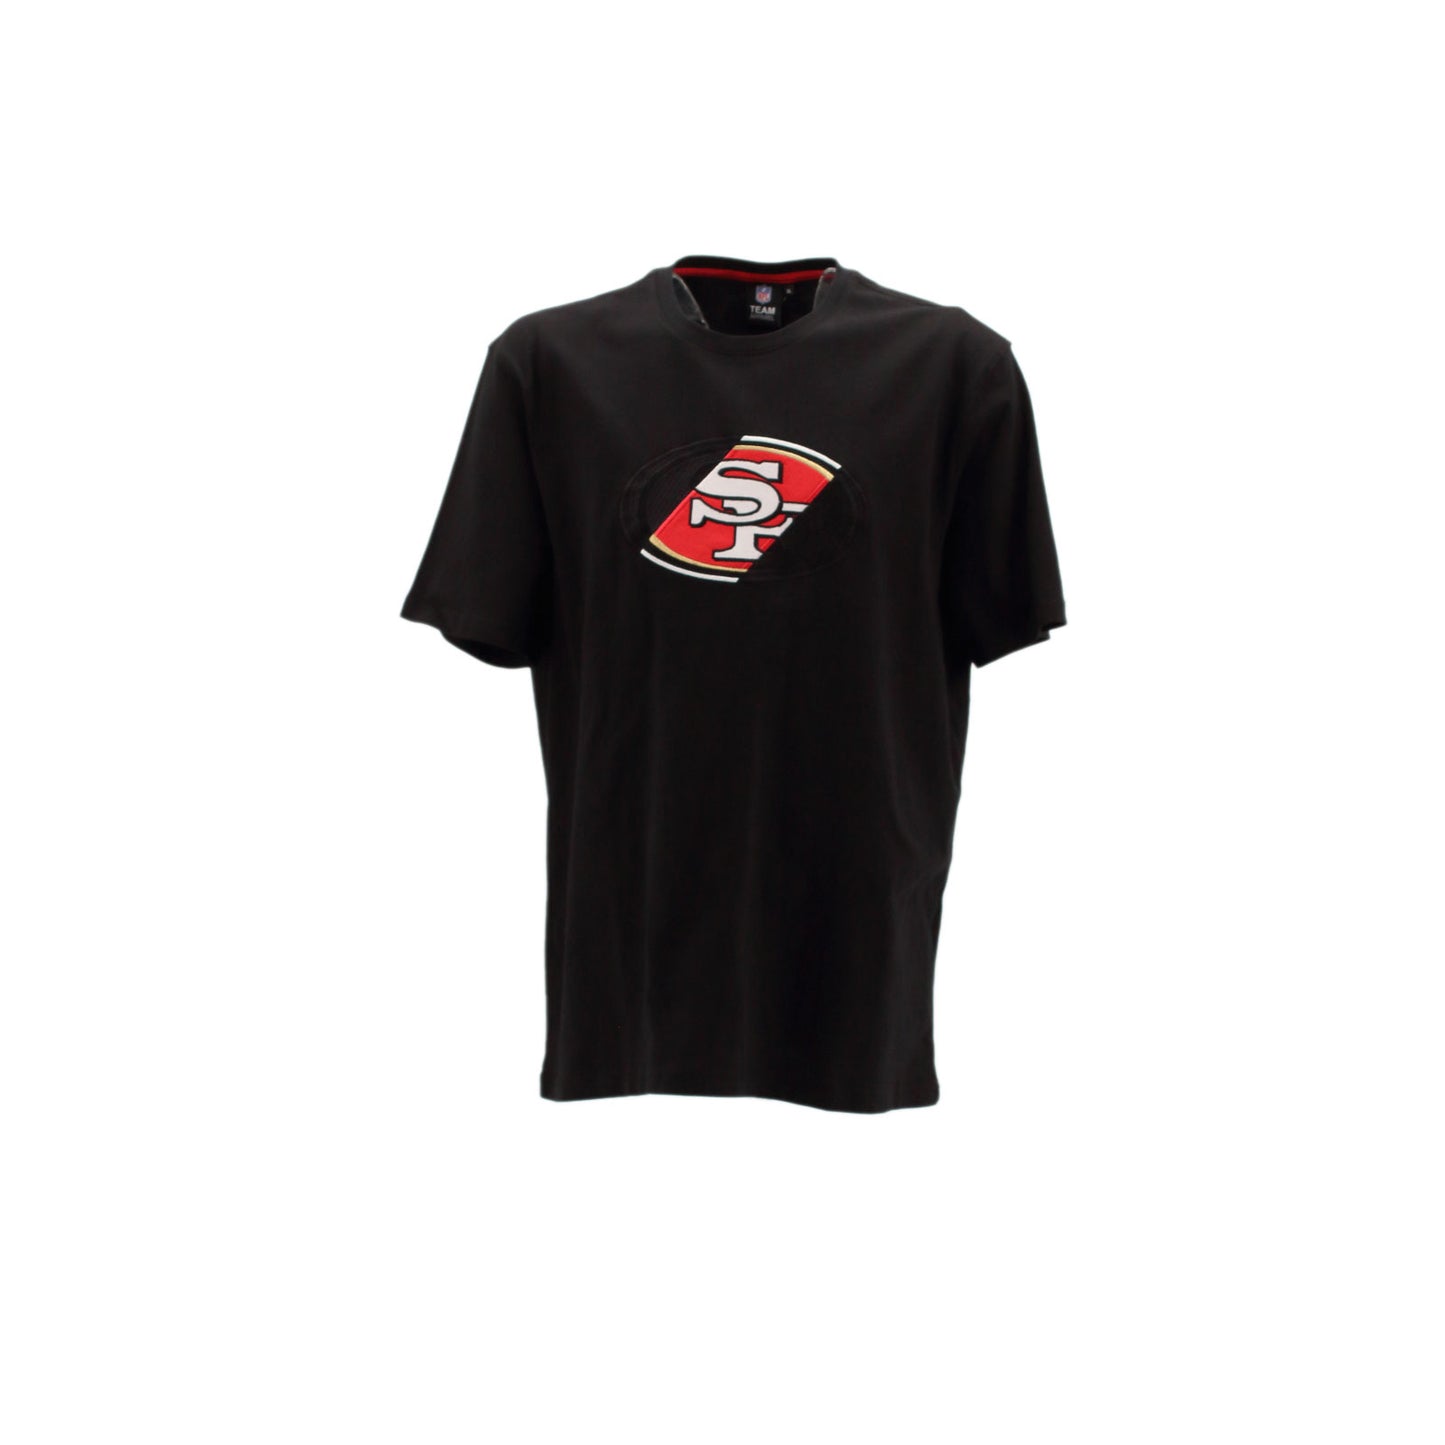 Fanatics NFL San Francisco 49ers Herren kurzarm T-Shirt schwarz 2019MBLK1OSS49